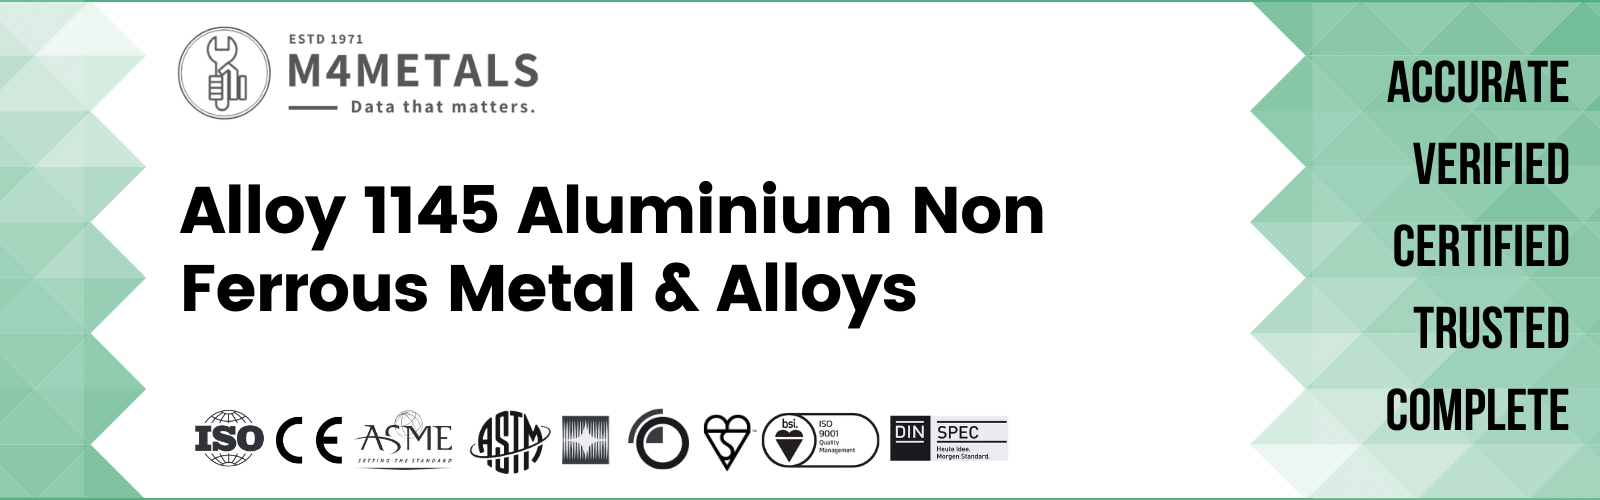 Aluminium Alloy 1145